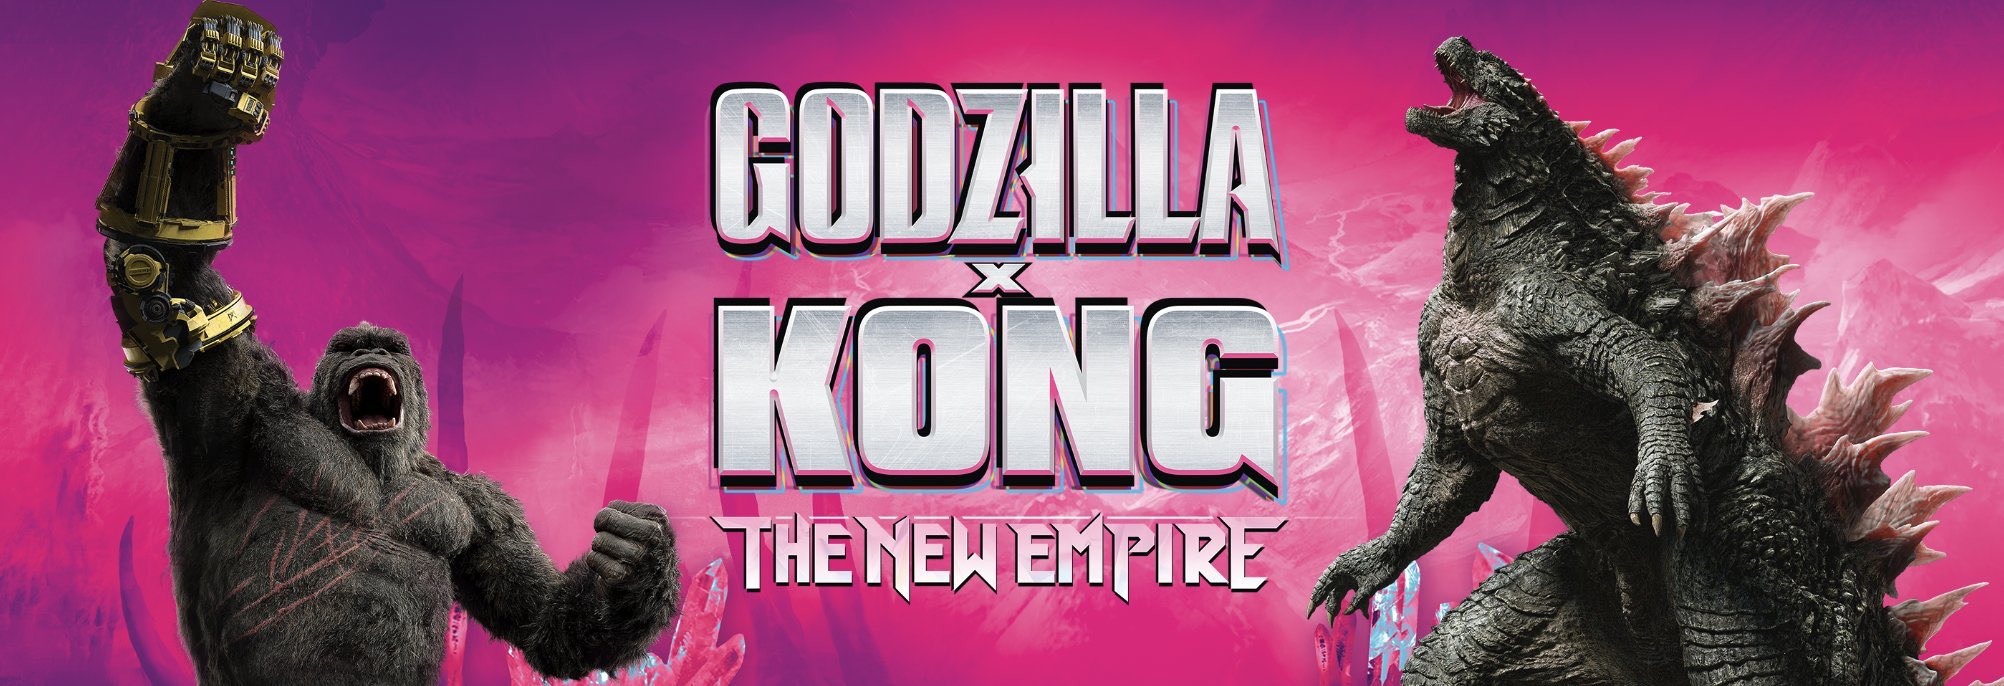 Godzilla x Kong promo banner